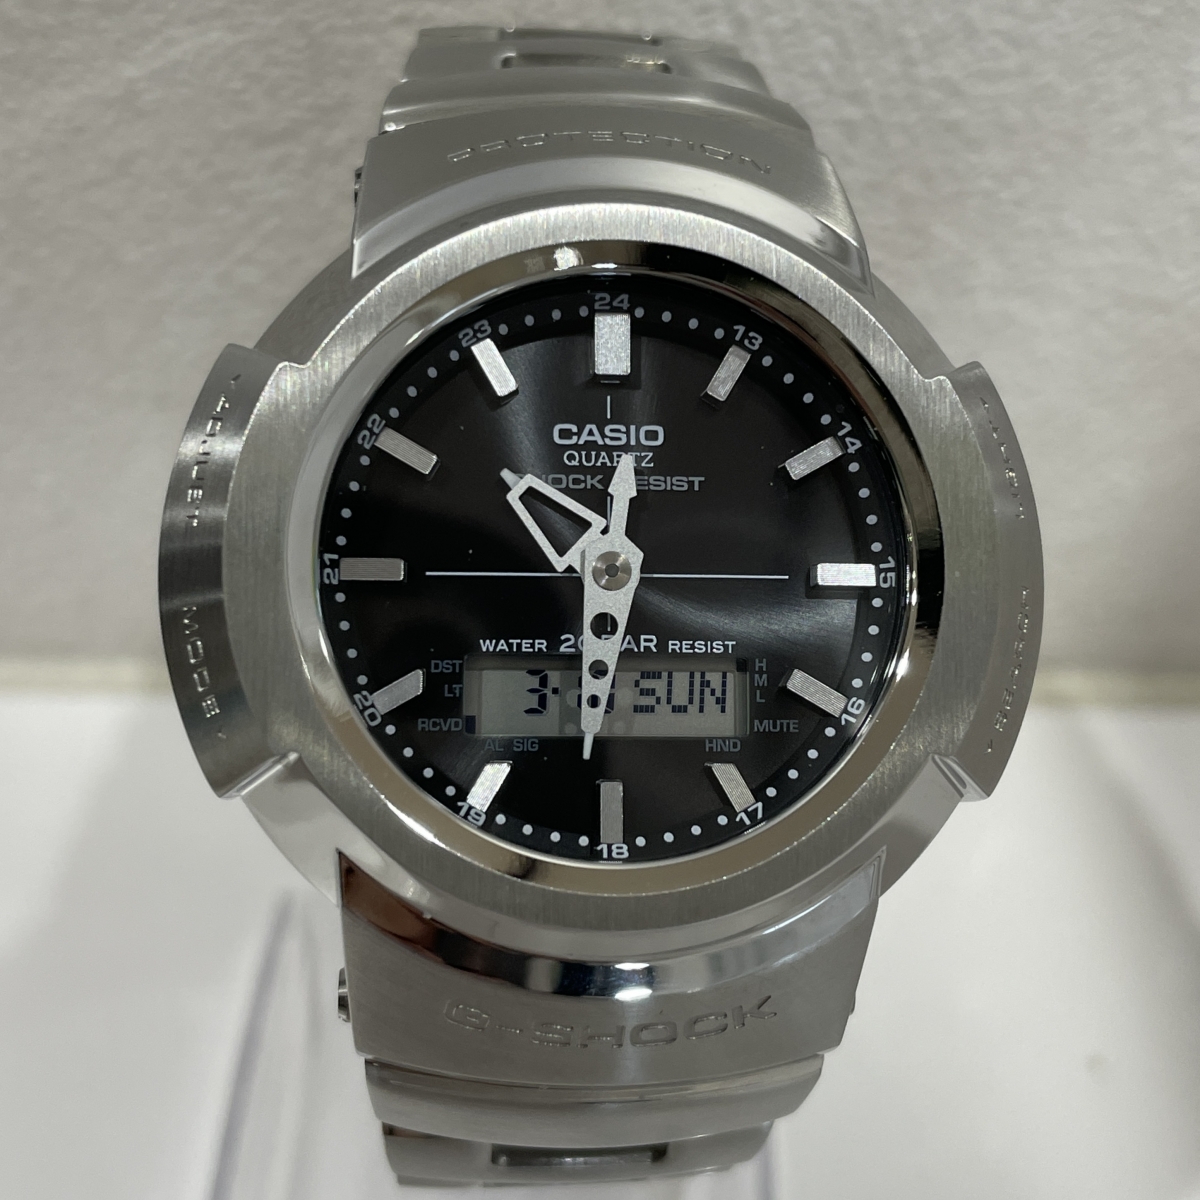 G-SHOCKのフルメタル 電波ソーラー デジタル腕時計 AWM-500Dの買取実績です。